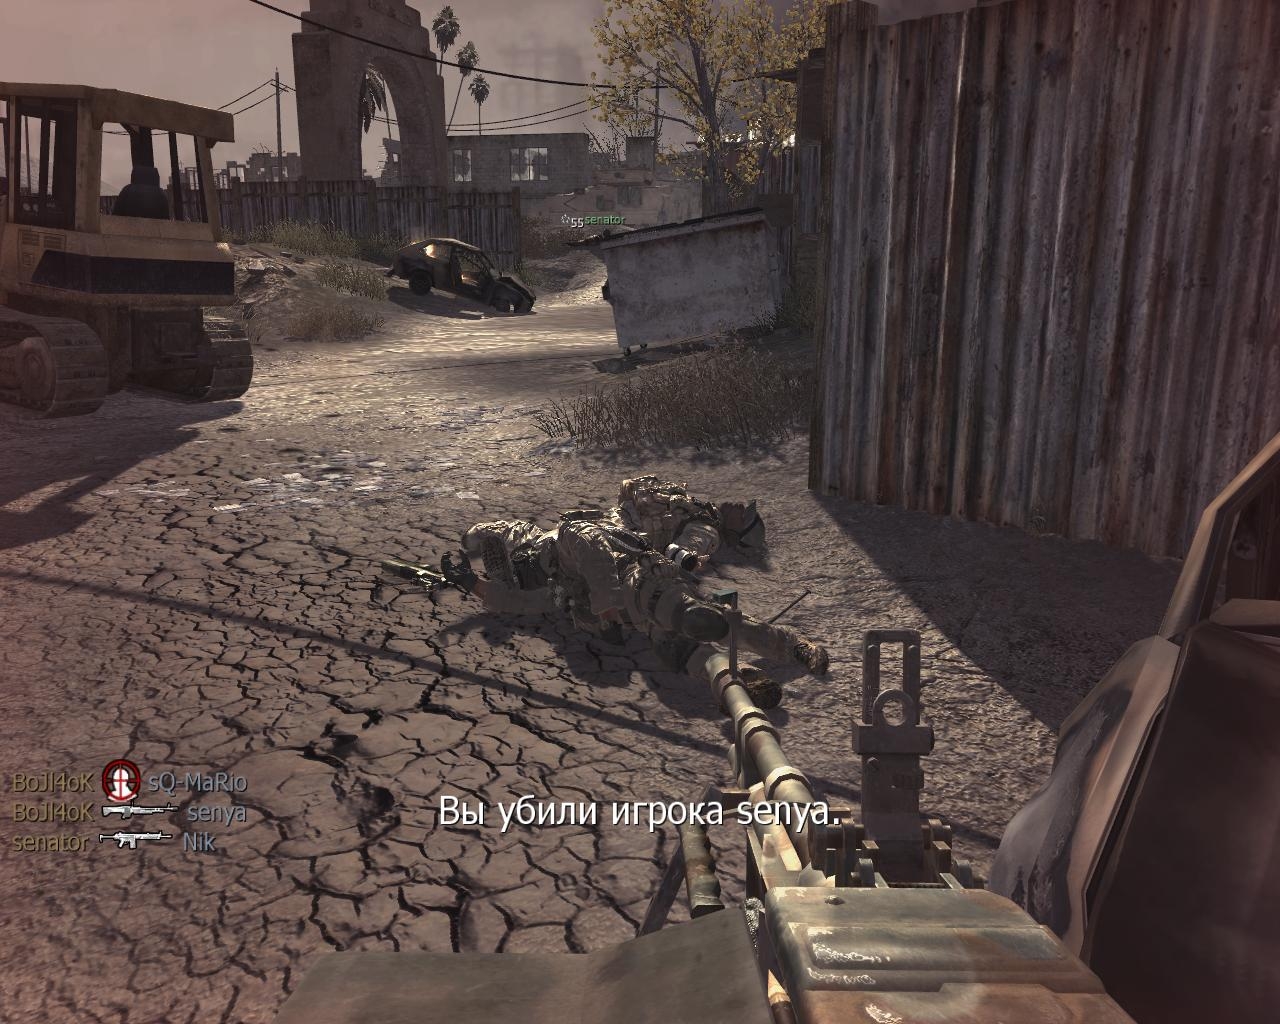 Игра от механиков калов дьюти. Call of Duty скрины из игры. Call of Duty 4 Modern Warfare Скриншоты. Call of Duty: Modern Warfare 4 скрины из игры. Снимки из игры Call of Duty 4.